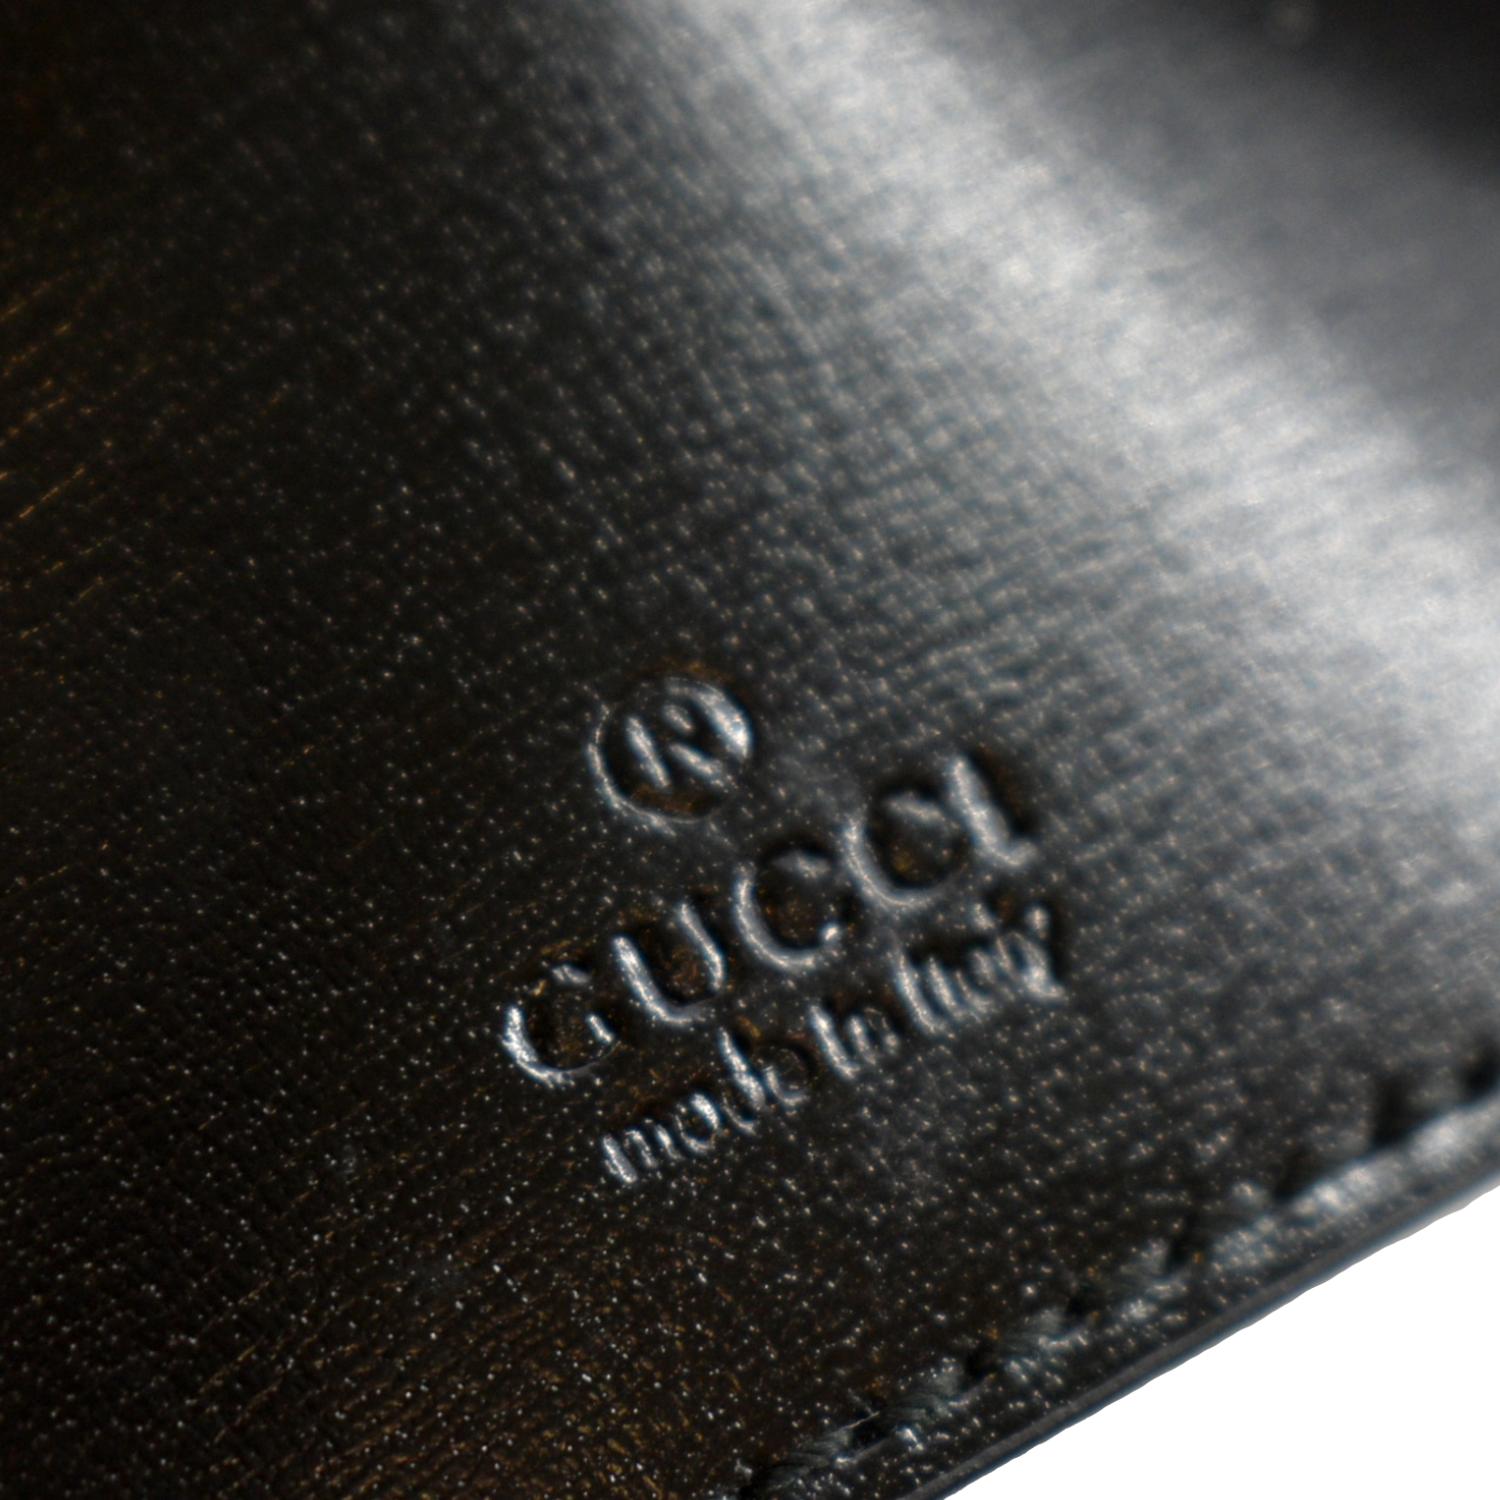 Gucci Jackie 1961 Medium Leather Shoulder Bag in Black